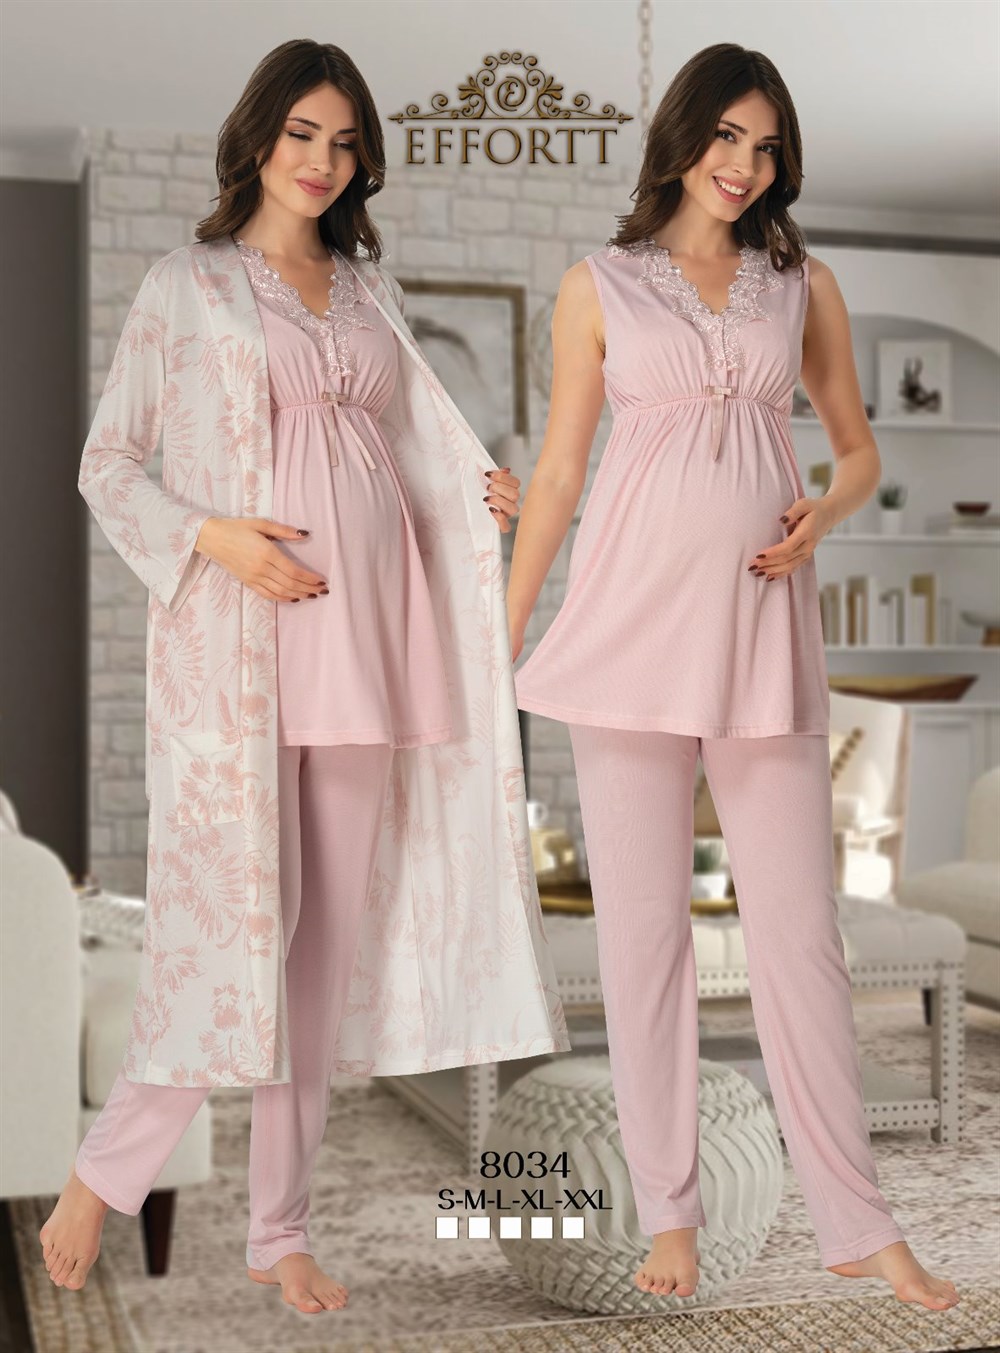 8034 Effortt hamile lohusa dantelli yaka pijama takımı